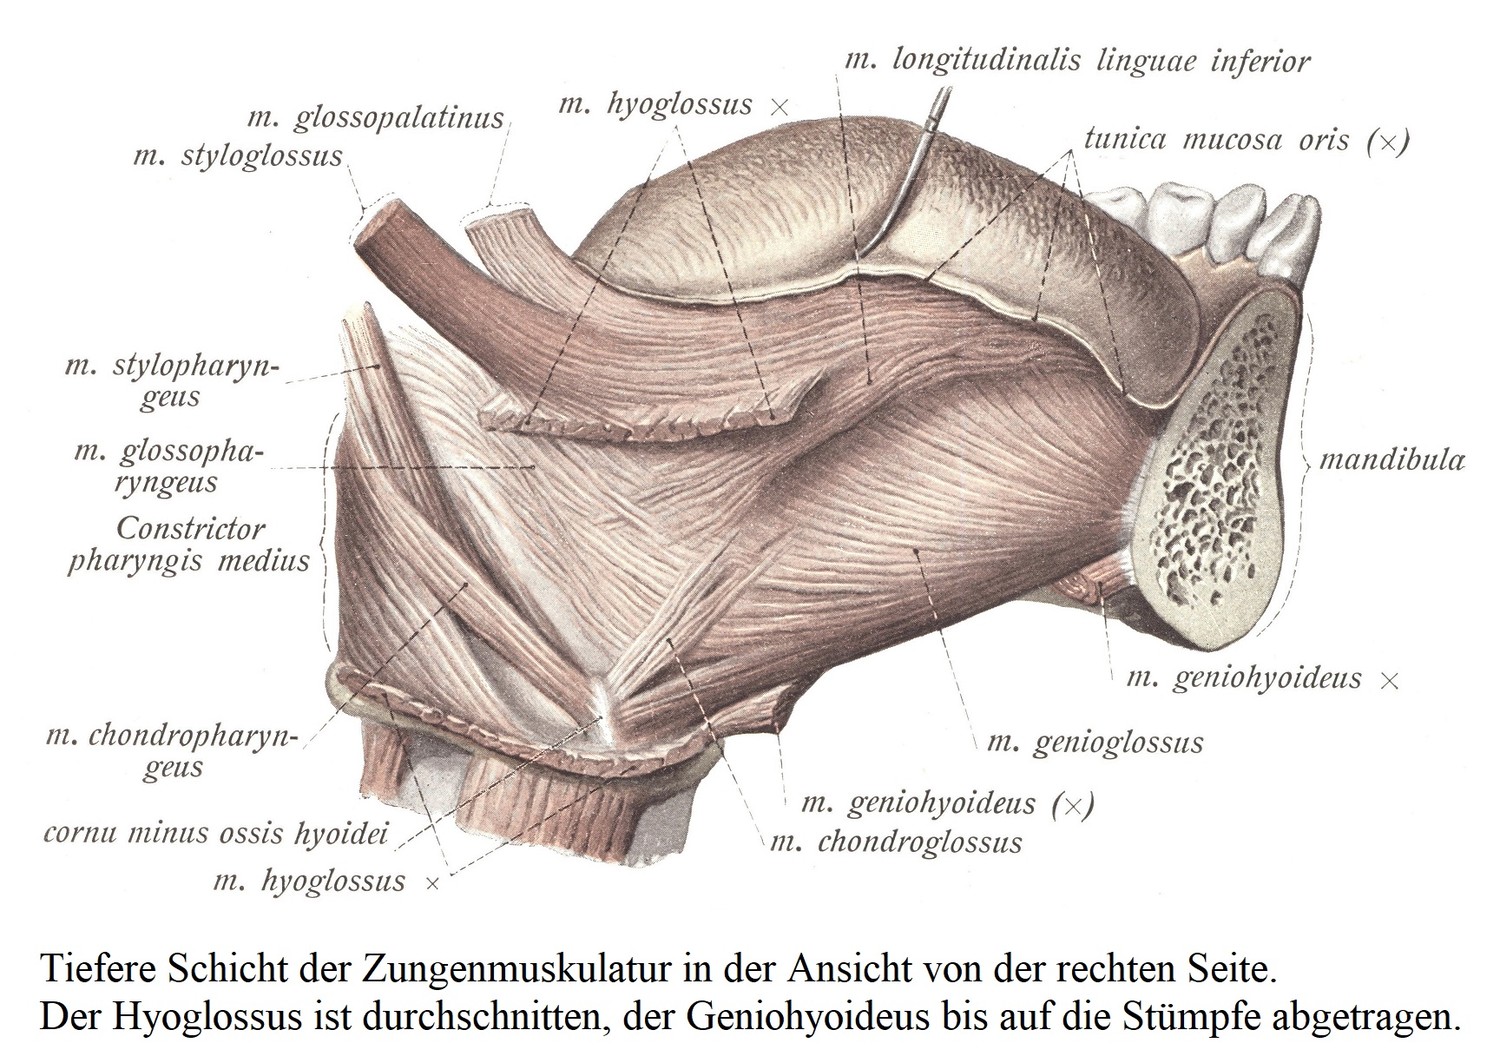 Глубокий слой мускулатуры языка, вид справа. Рассечена подъязычная, подбородочно-подъязычная удалена до культей.